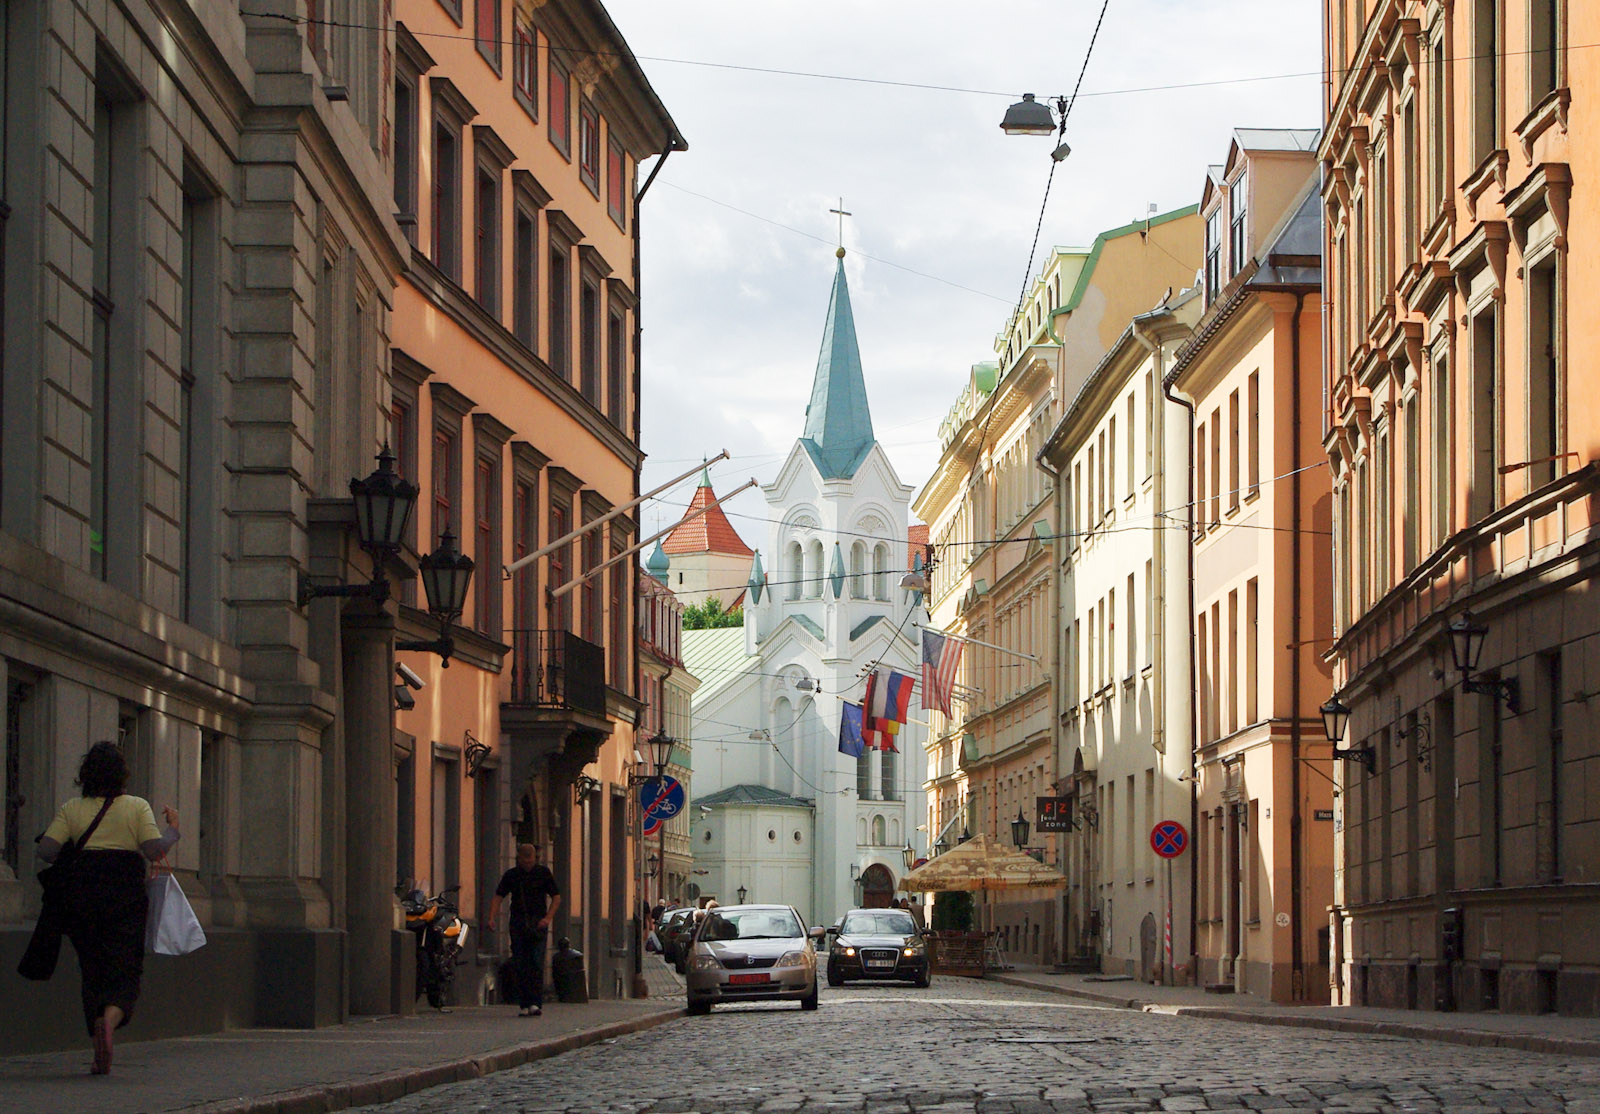 Riga Old Town. Image: Gytis Liutkus under a CC license